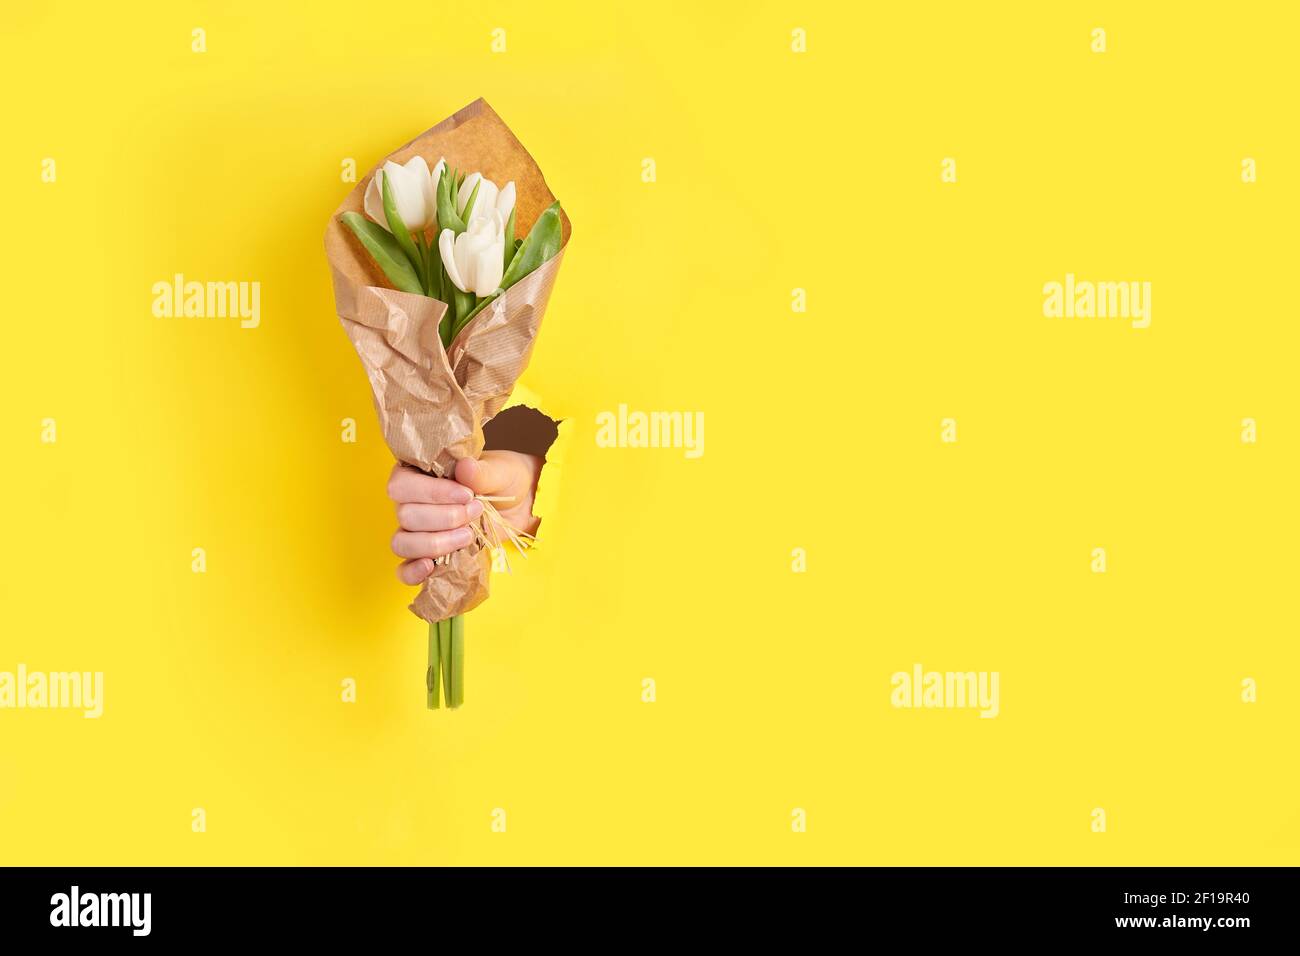 donna mano che tiene i fiori bianchi tulipani attraverso il foro dentro carta gialla Foto Stock